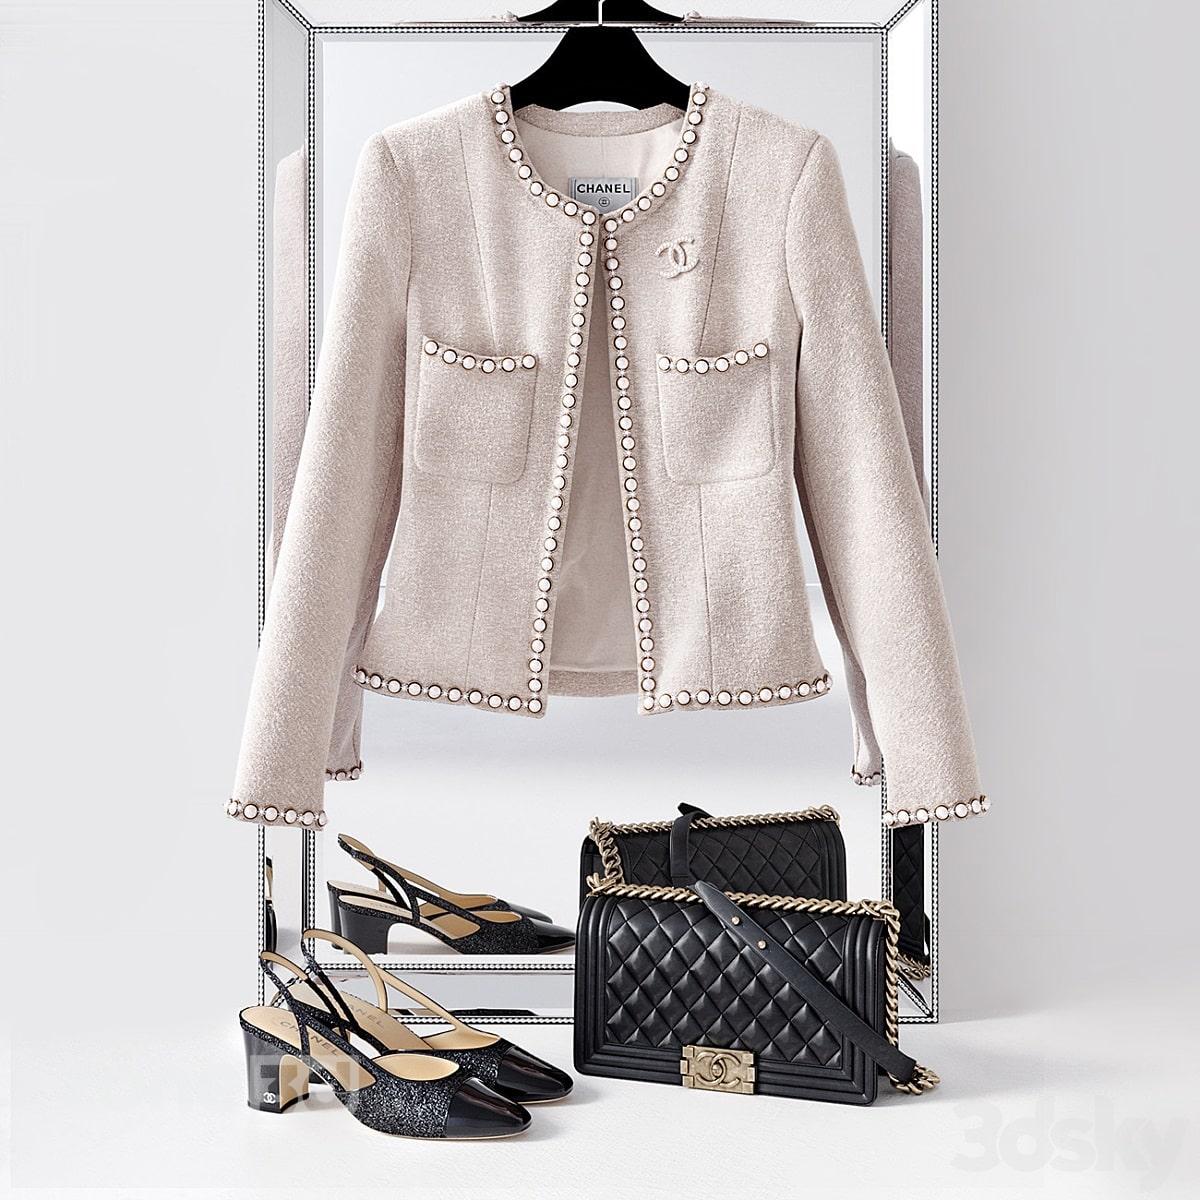 آبجکت ست کت پارچه ای کلاسیک زنانه به همراه کیف و کفش چرمی Chanel